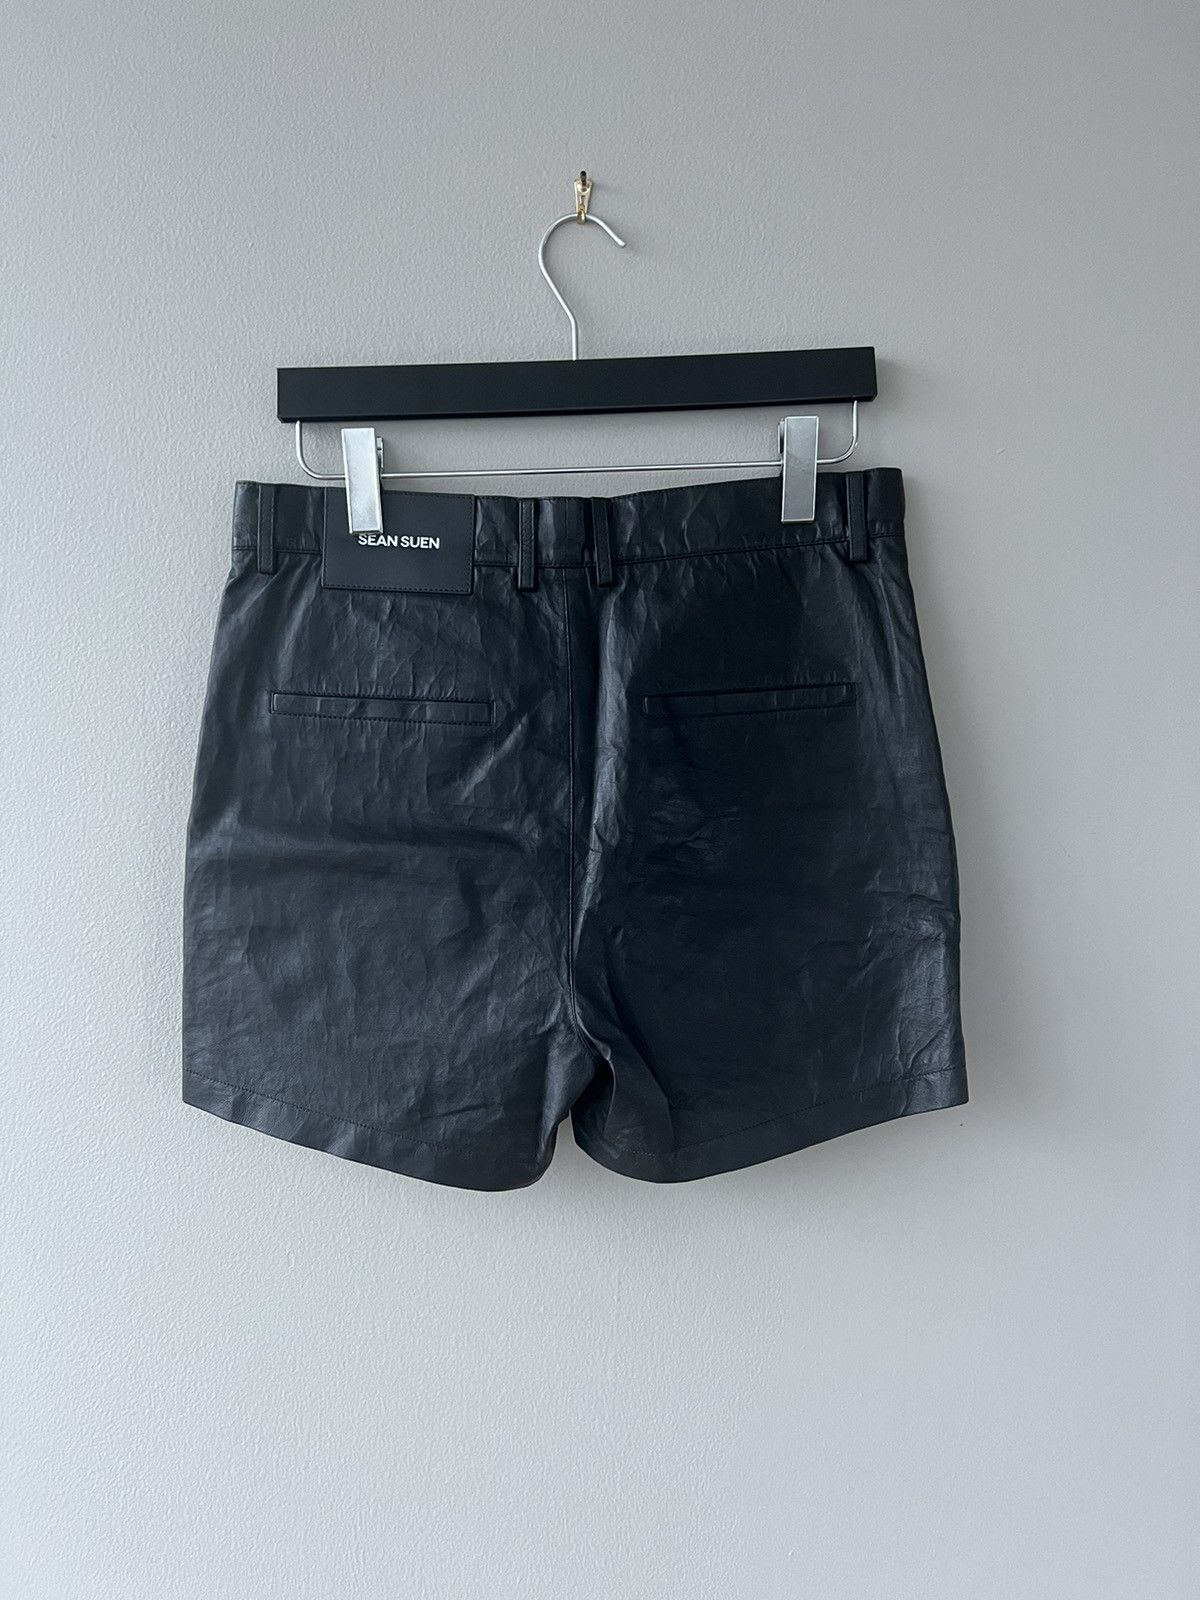 Sean Suen - Leather Mini-Shorts - 3